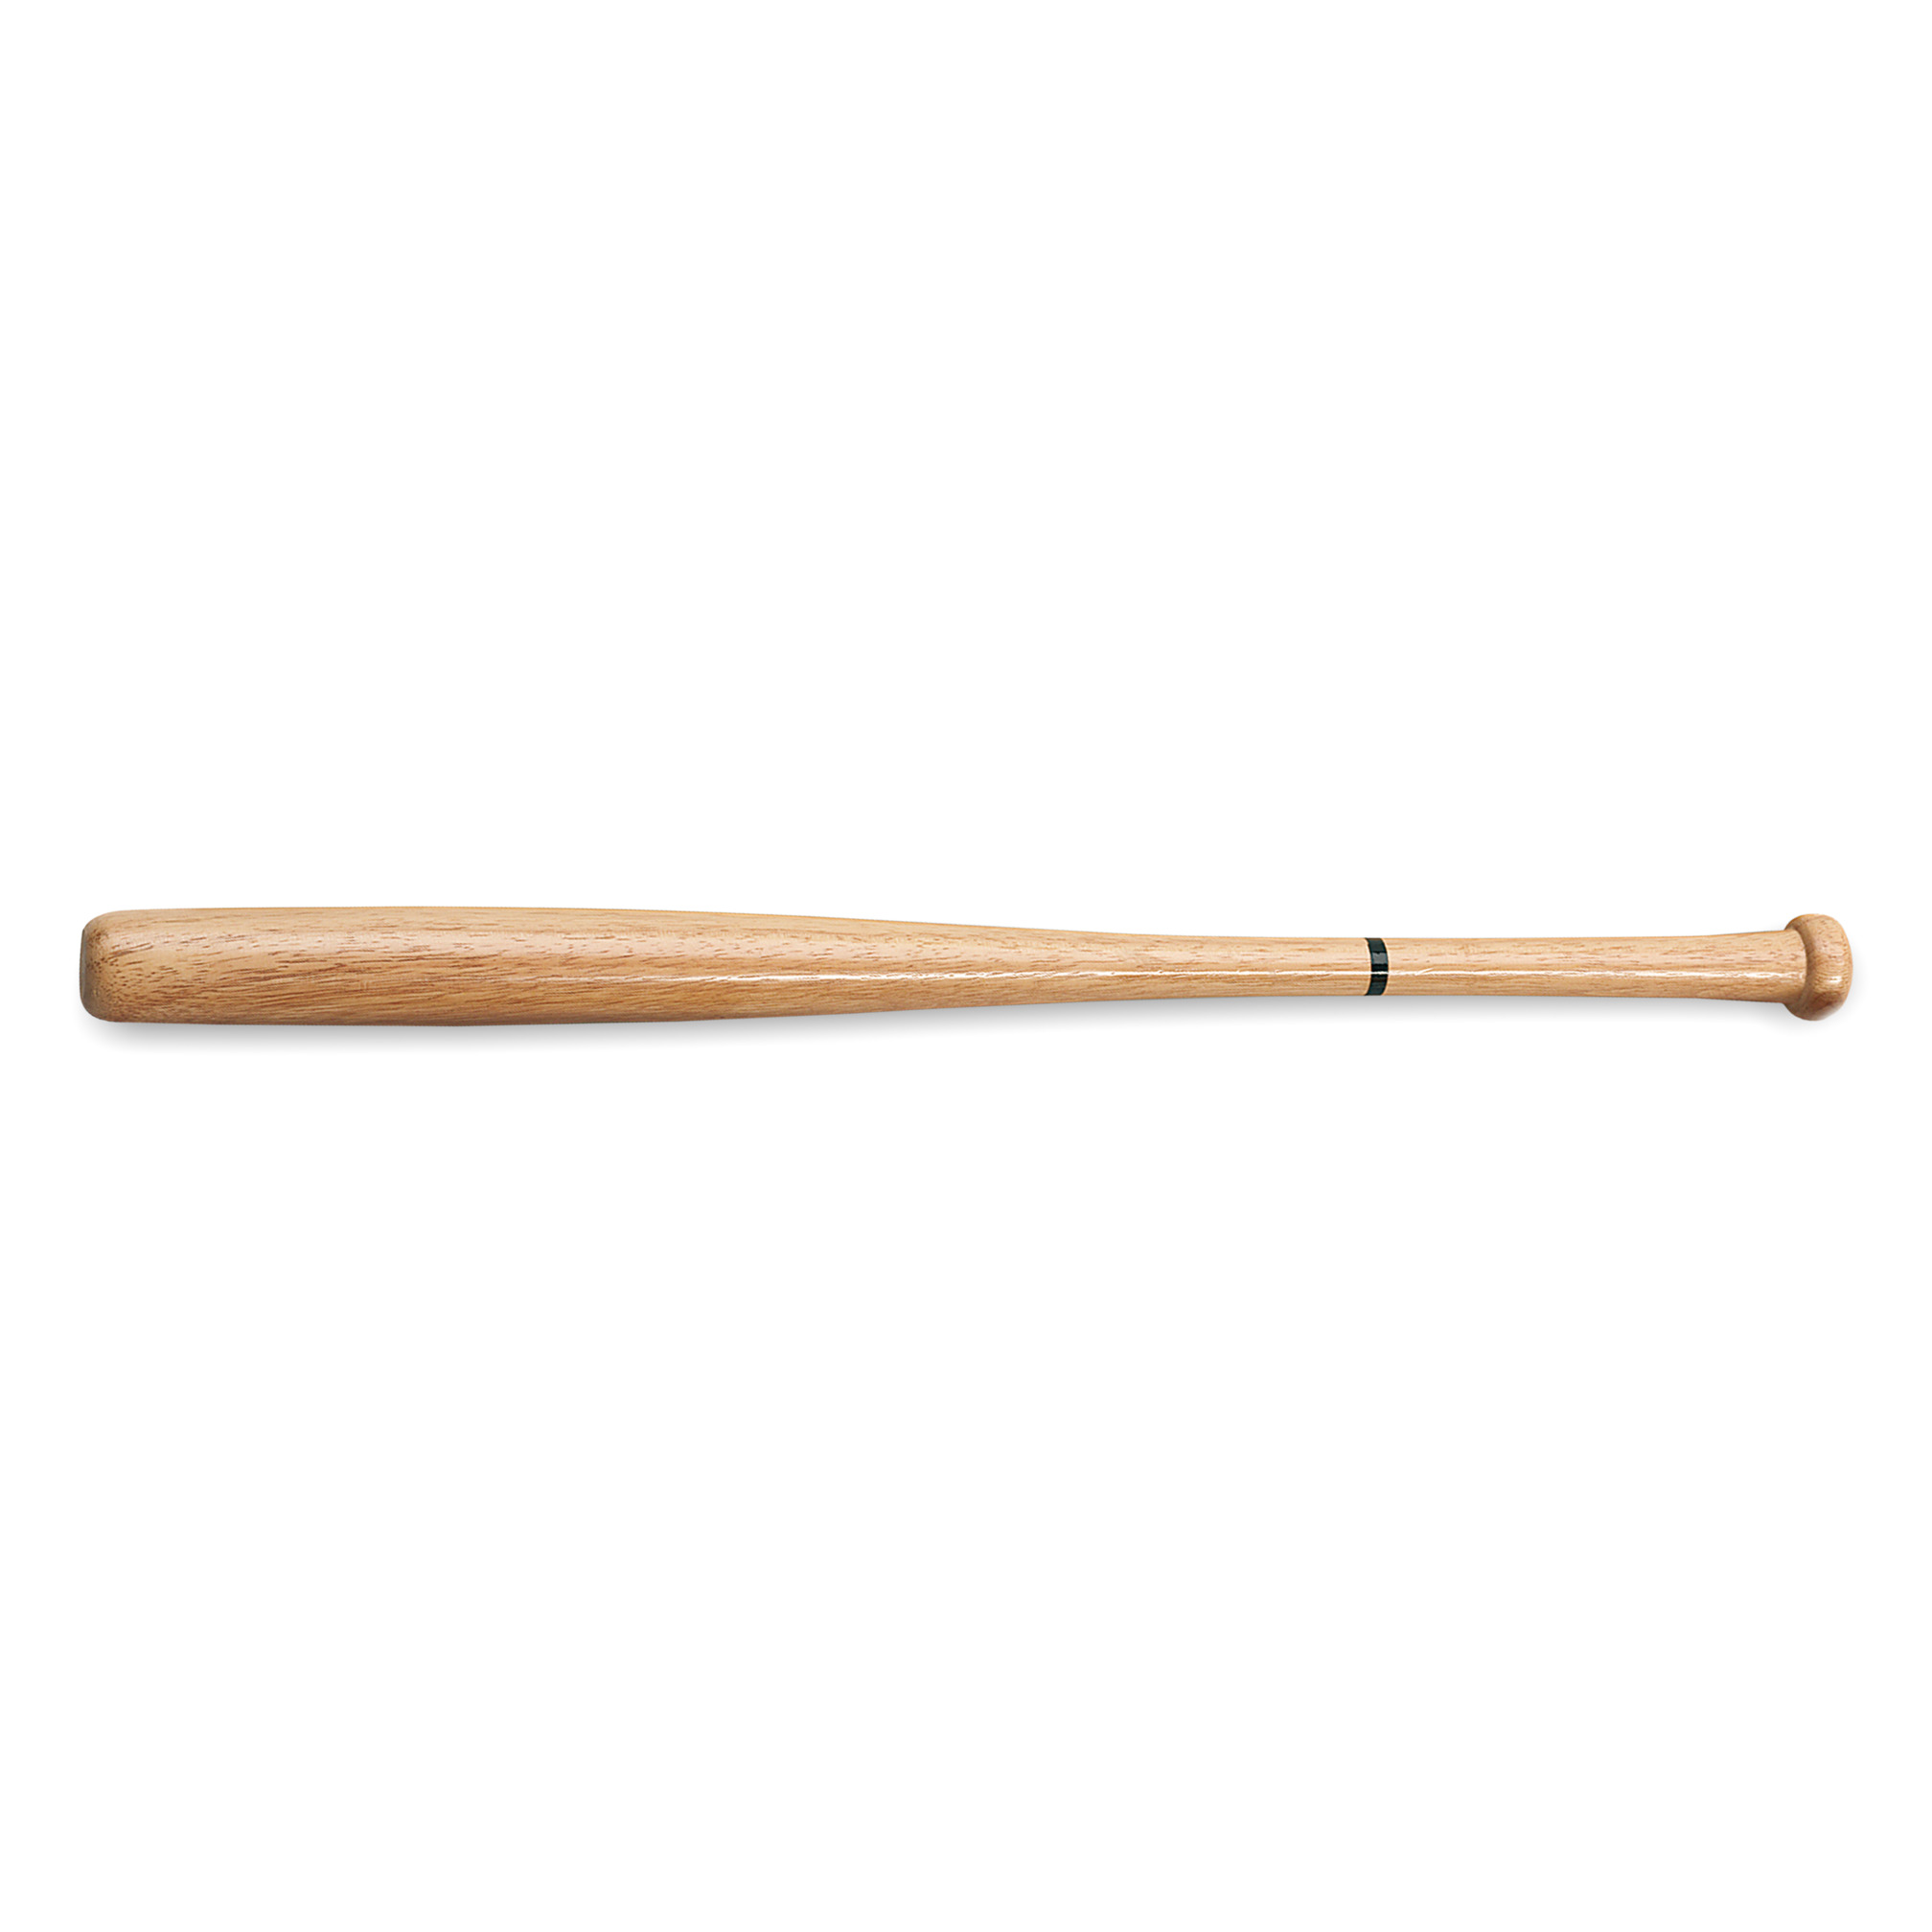 Softball bat wooden, 30 inch